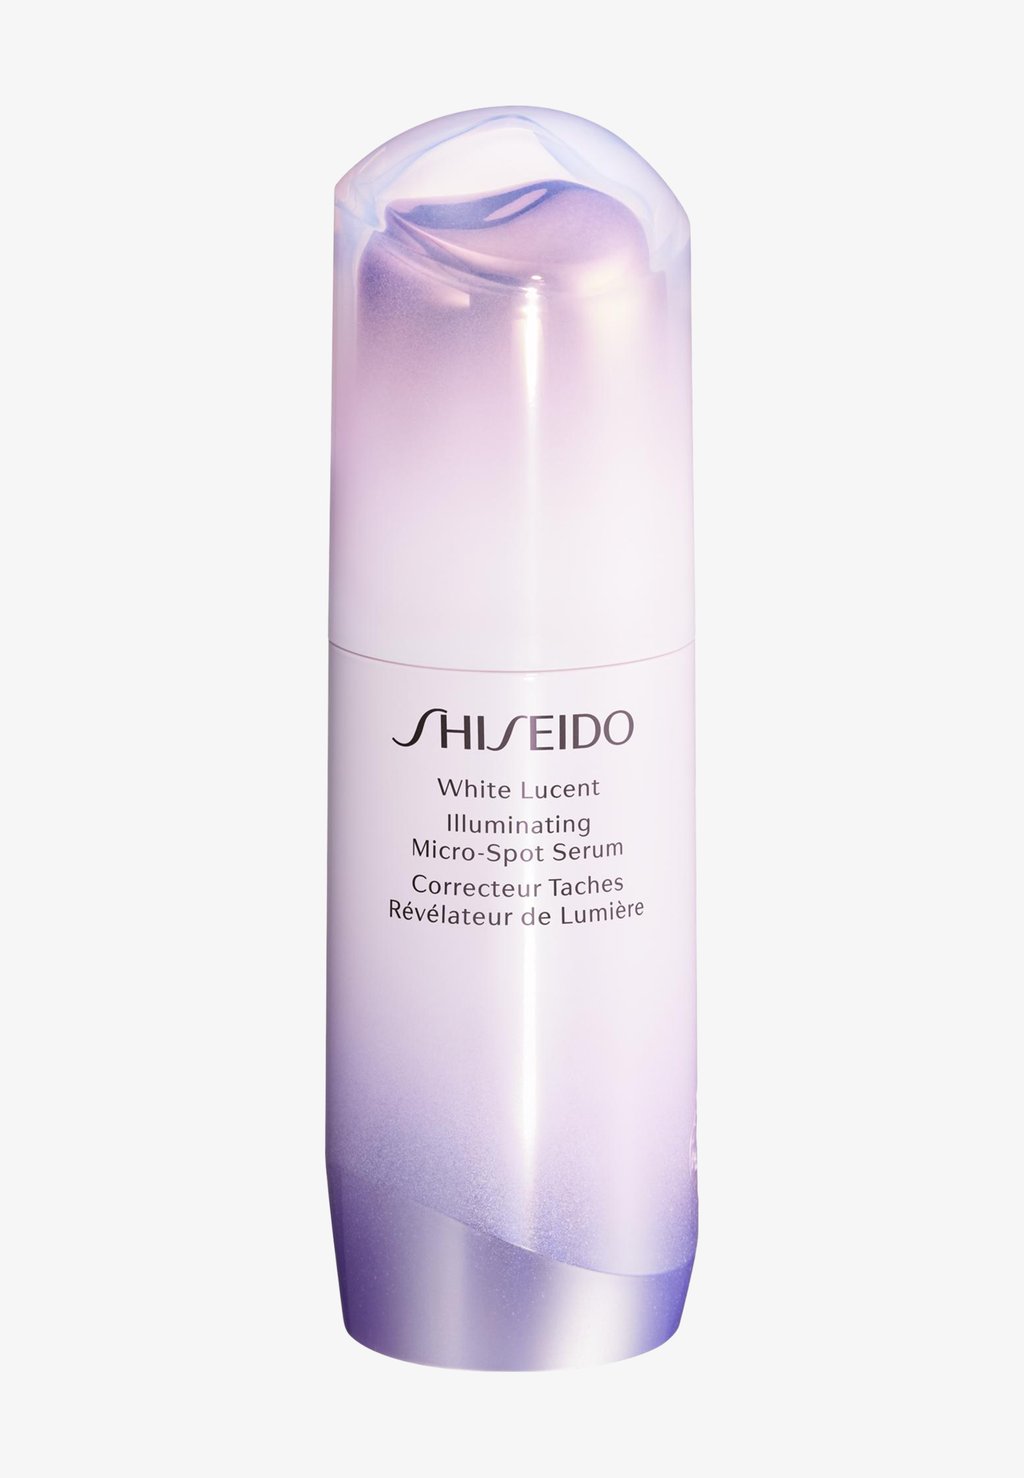 Сыворотка White Lucent Illuminating Micro-Spot Serum 50Ml Shiseido осветляющая сыворотка для лица против пигментных пятен 30 мл shiseido white lucent illuminating micro spot serum